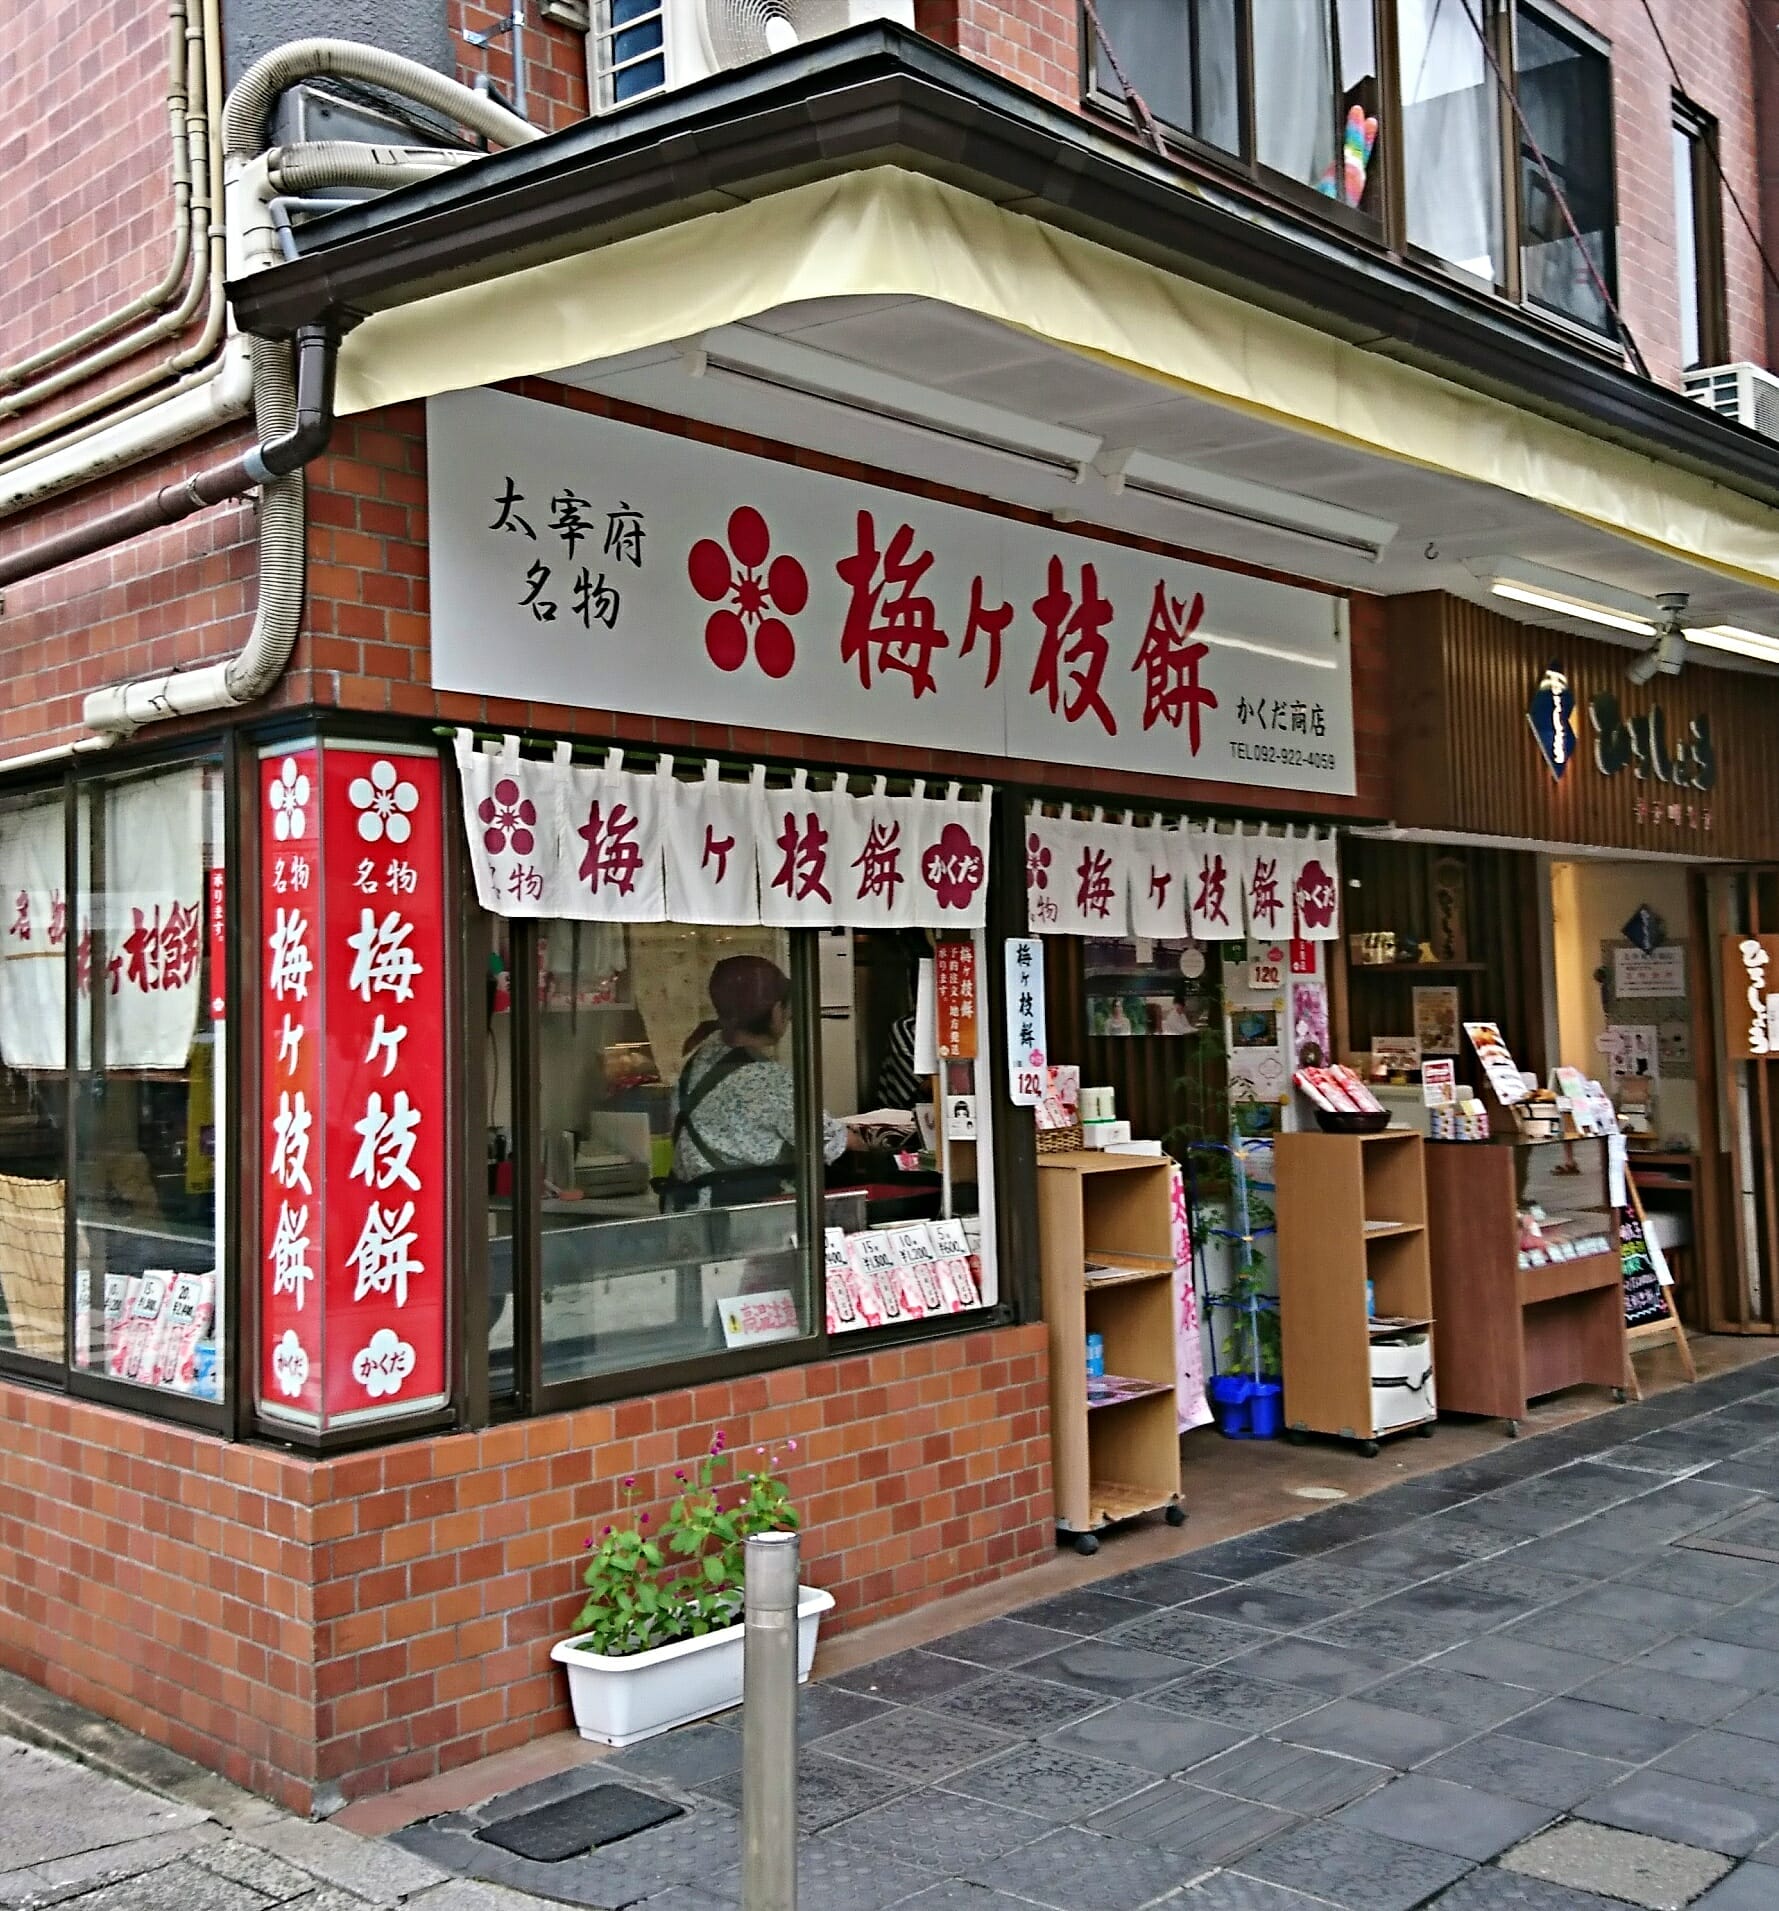 太宰府天満宮の門前参道の梅ヶ枝餅のお店